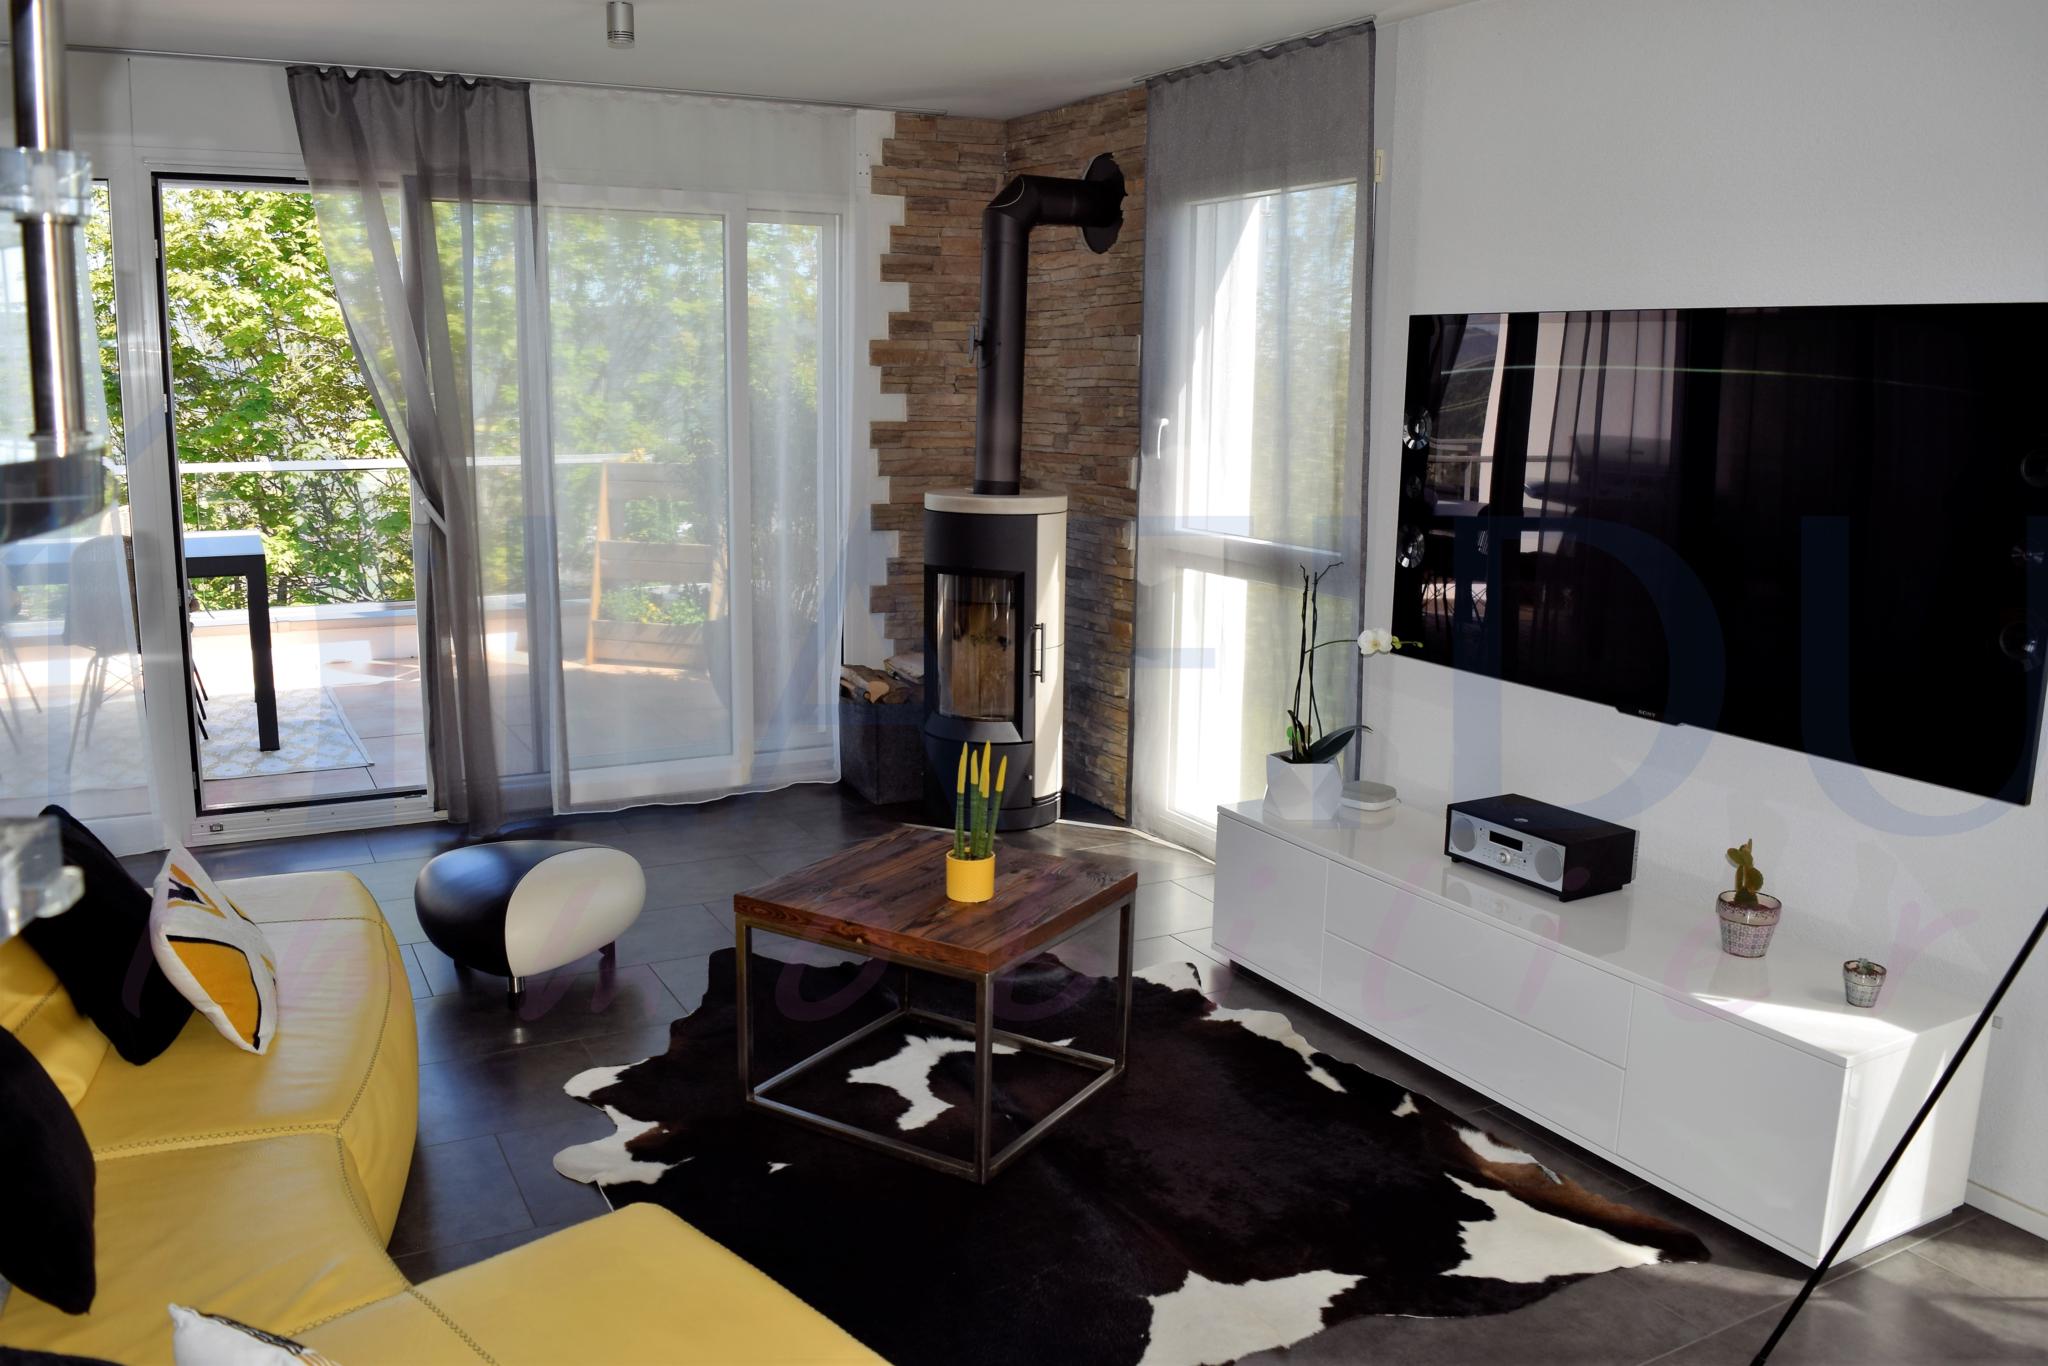 VENDU - Appartement de standing avec terrasses, vue dégagée, grande pièce à vivre lumineuse et au calme.